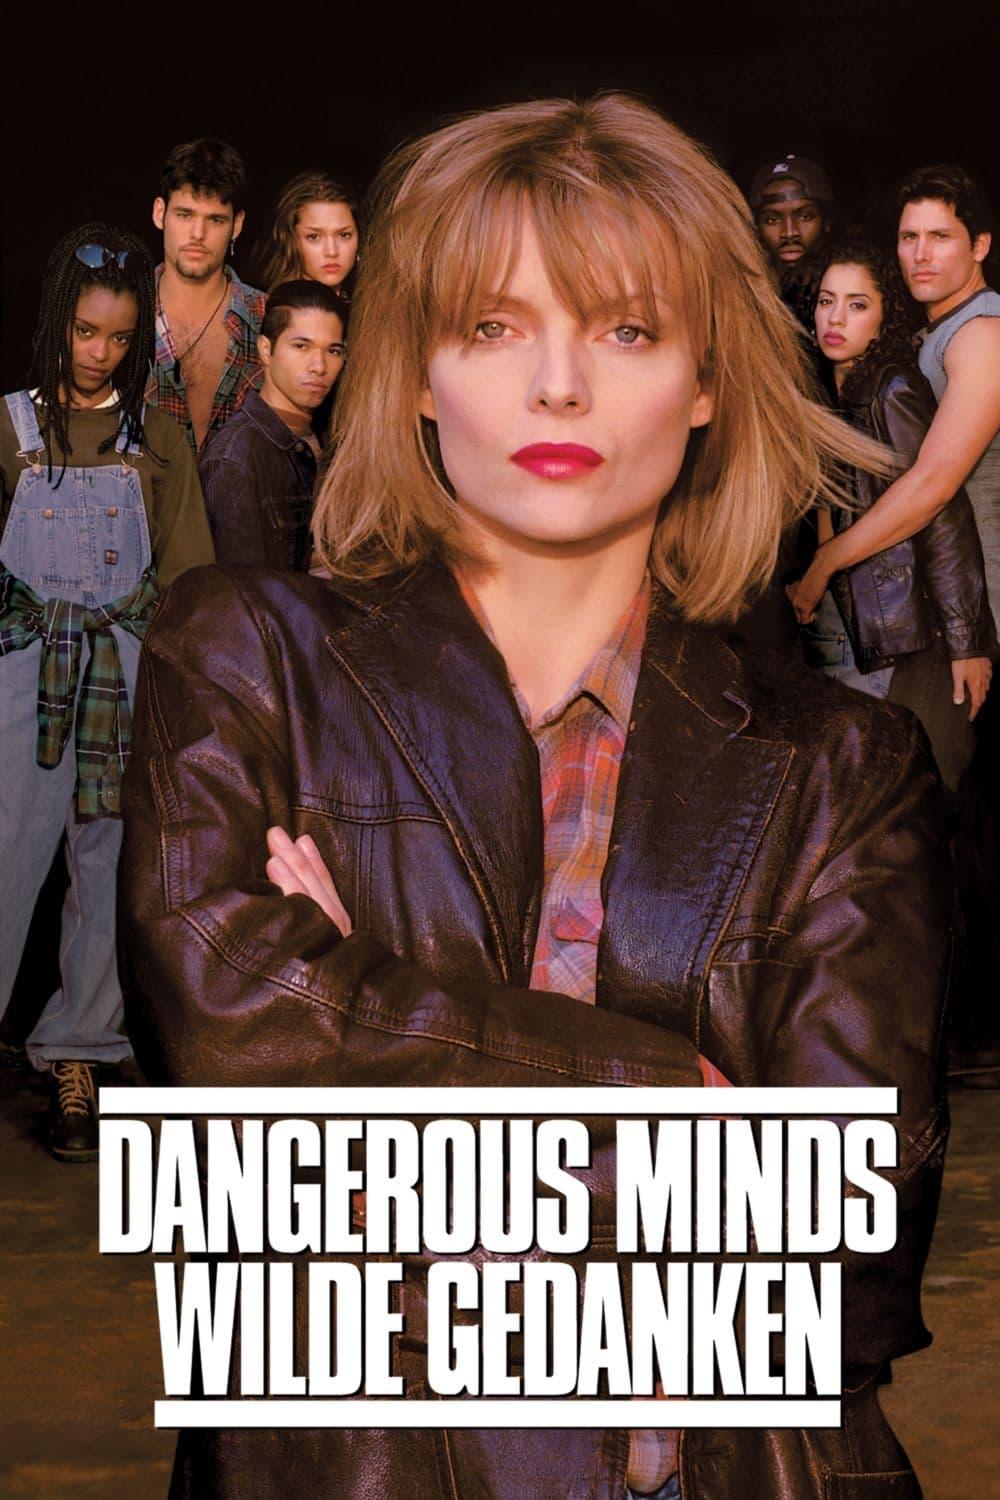 Dangerous Minds - Wilde Gedanken poster